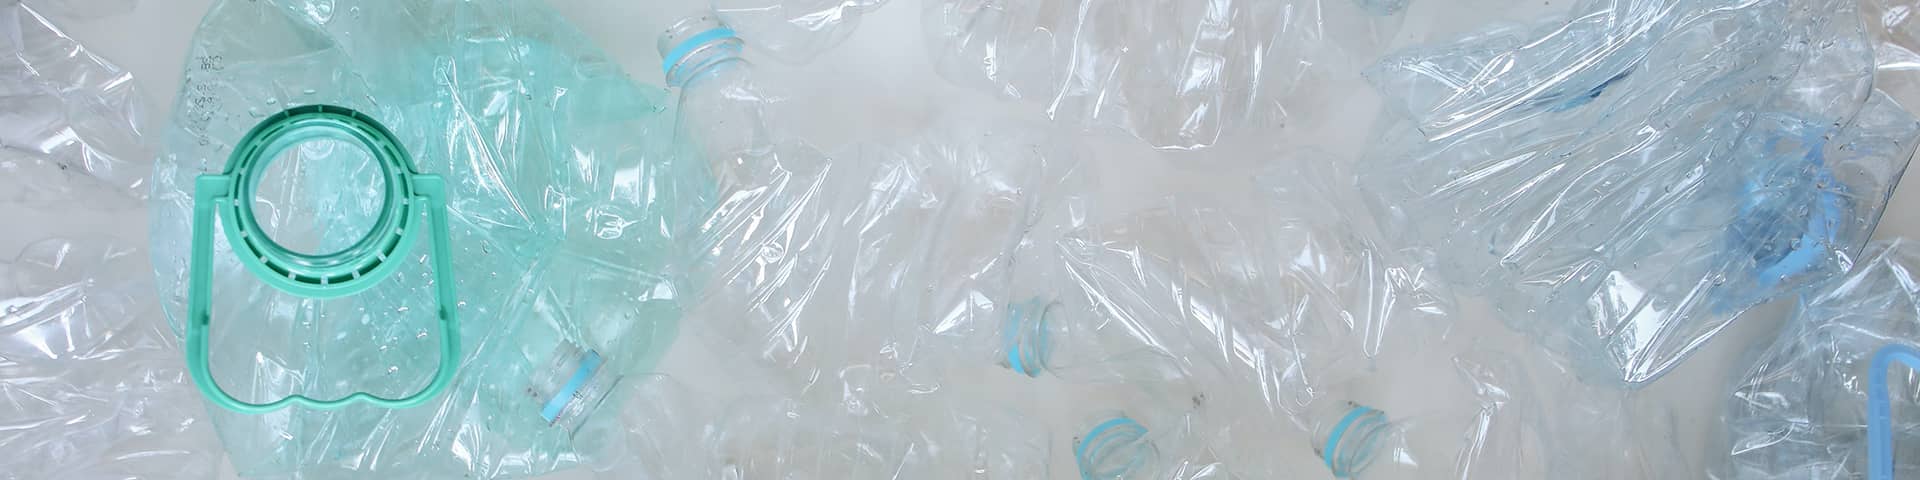 Déchets de plastique